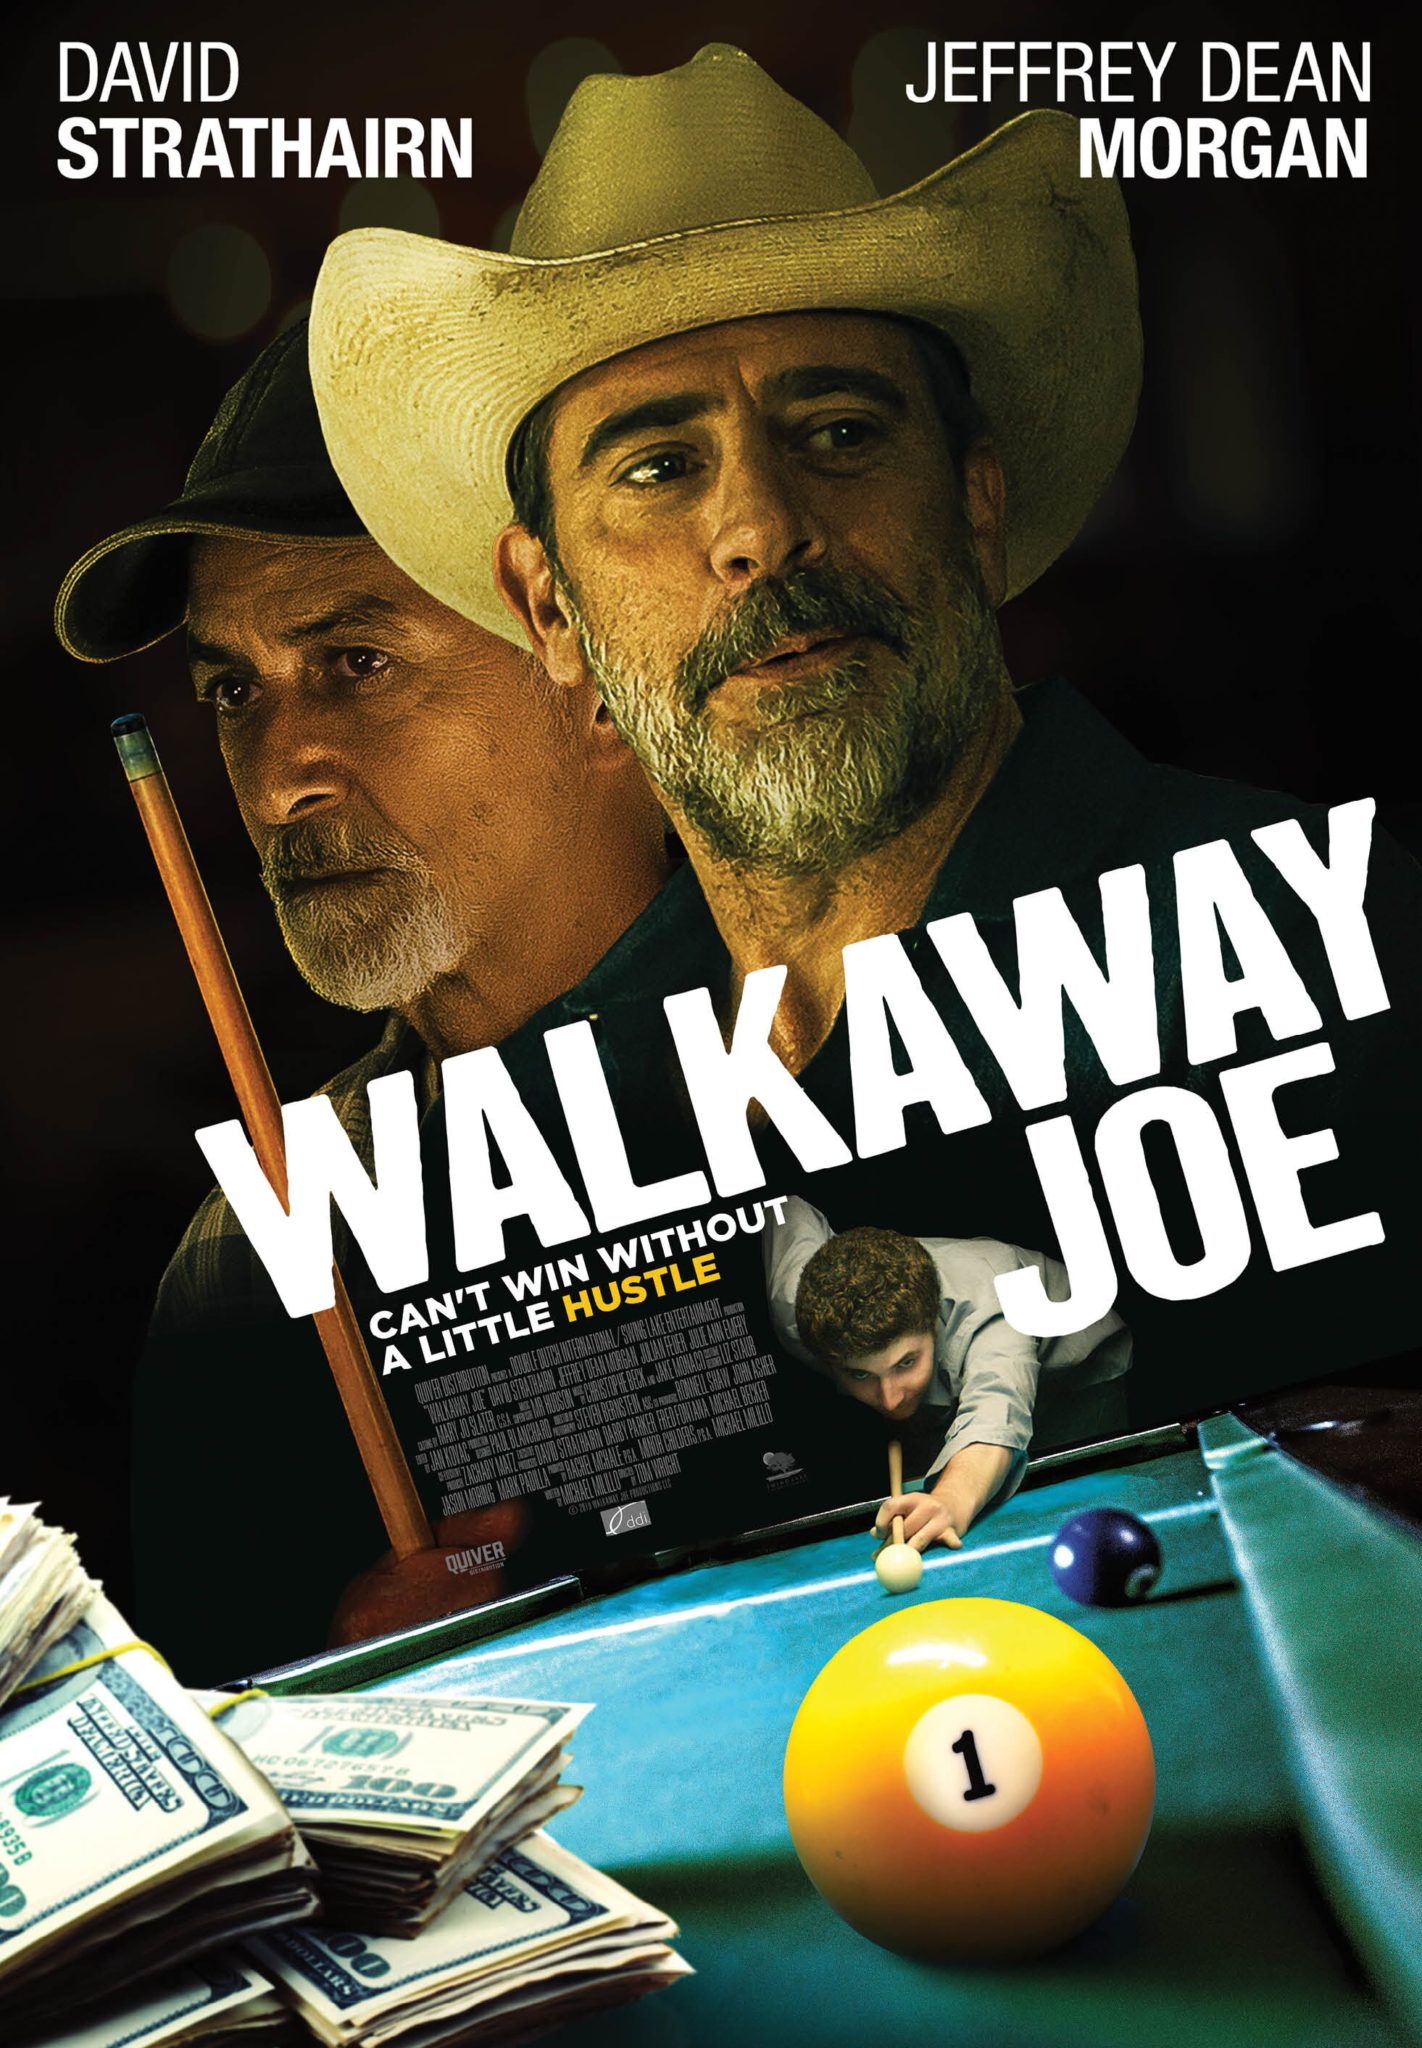 Walkaway Joe Movie Review